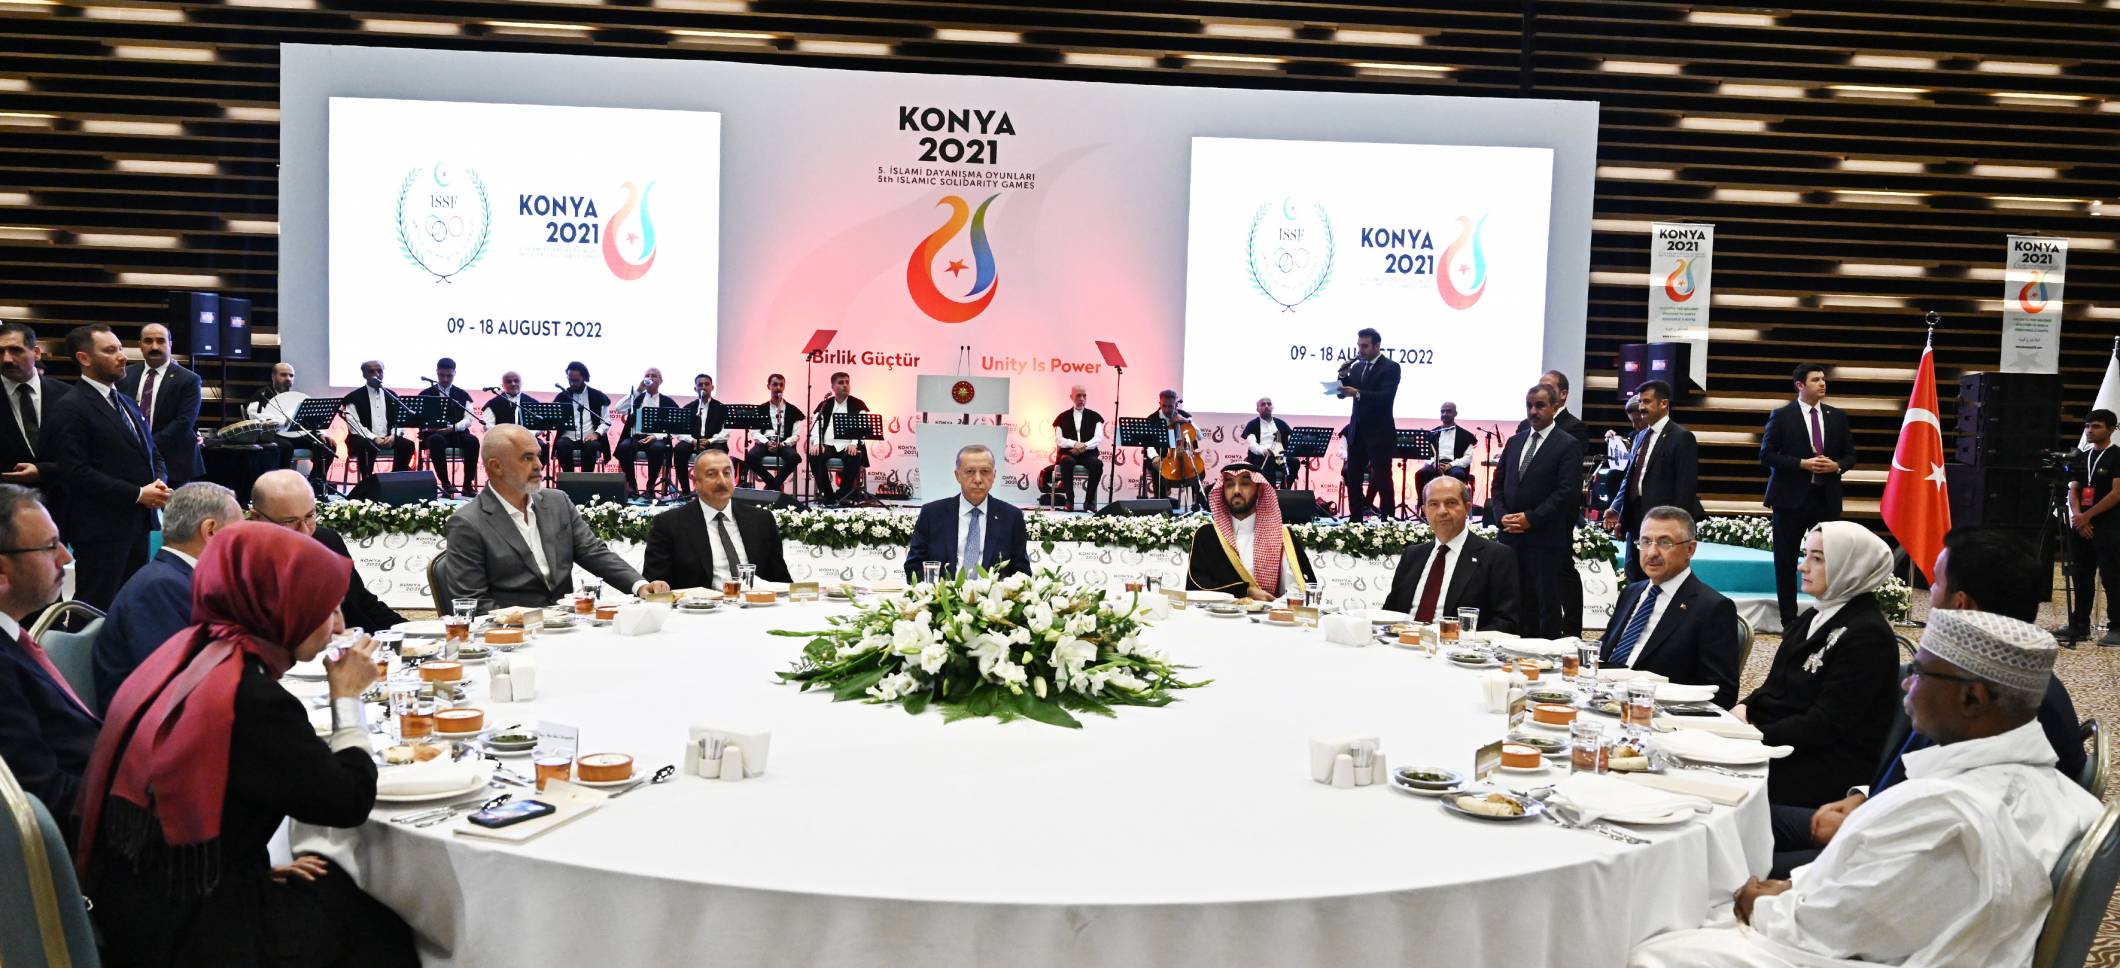 Дан ужин в честь глав государств, правительств и делегаций, участвующих в церемонии открытия Пятой Исламиады